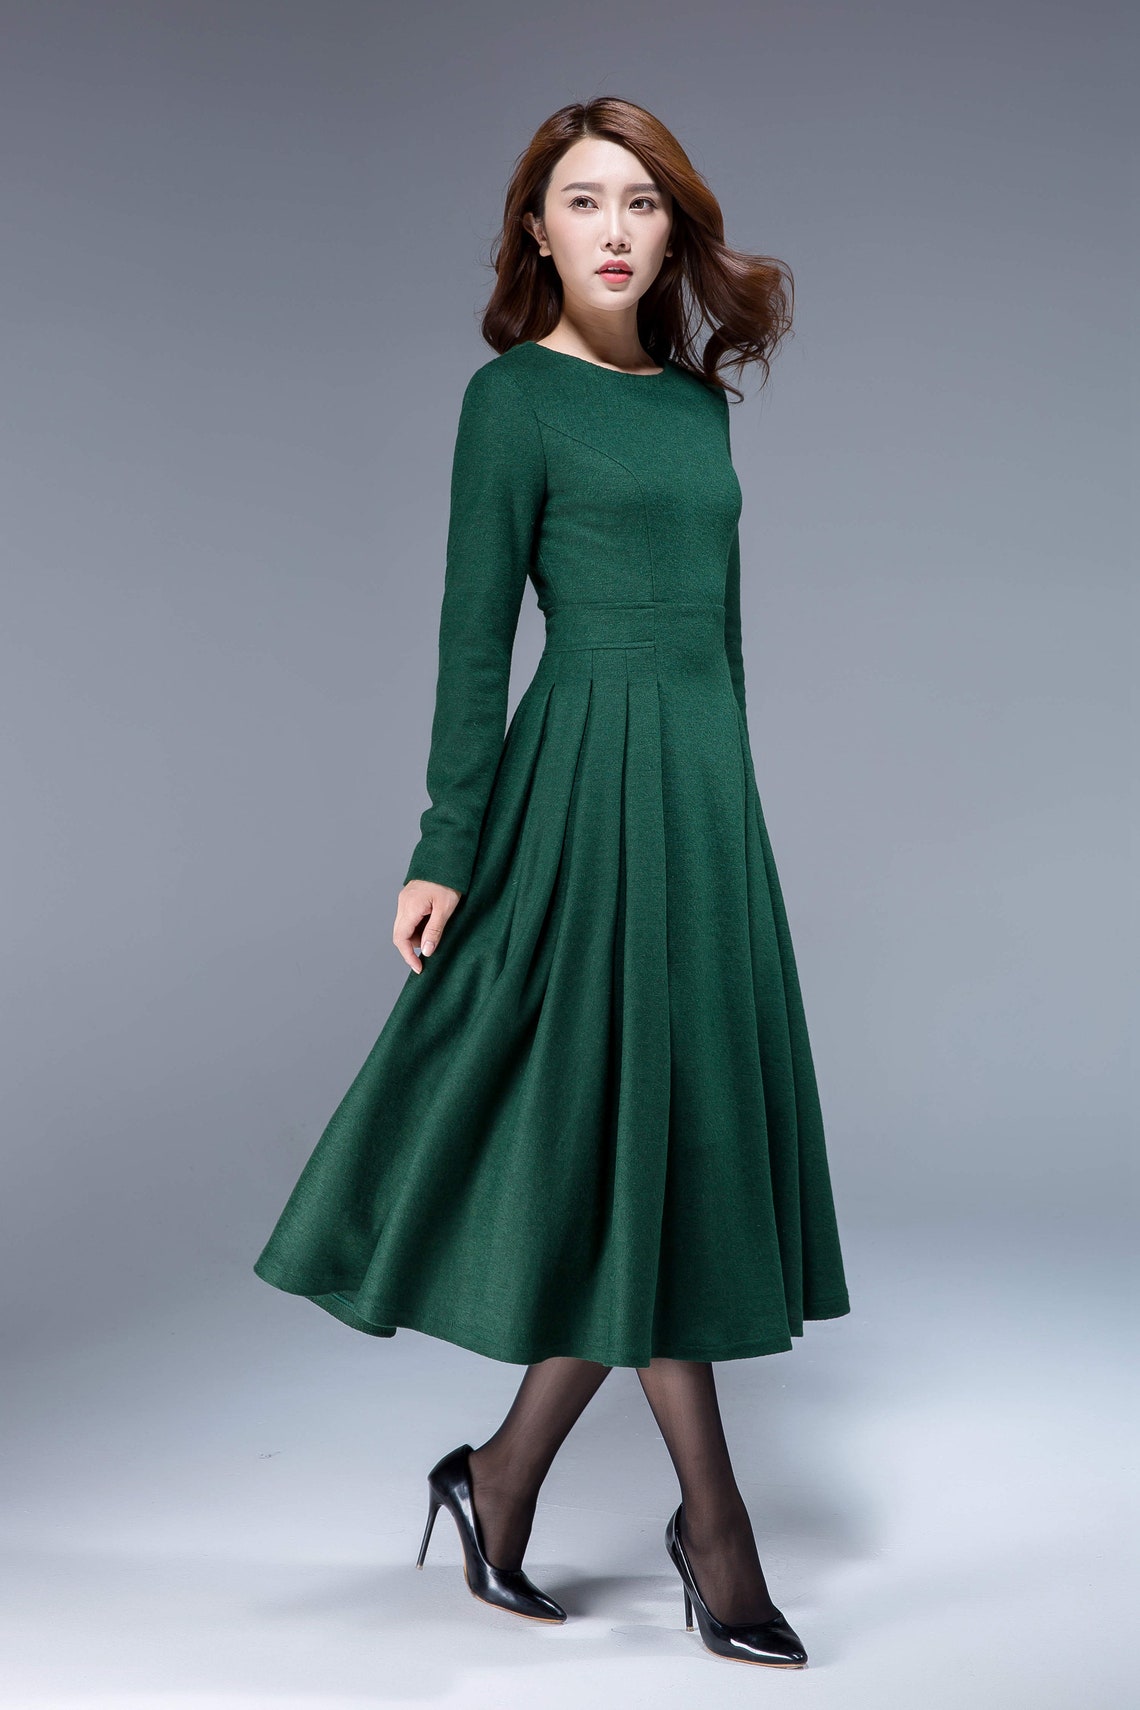 Green dress wool dress midi dress pleated dress fit and | Etsy